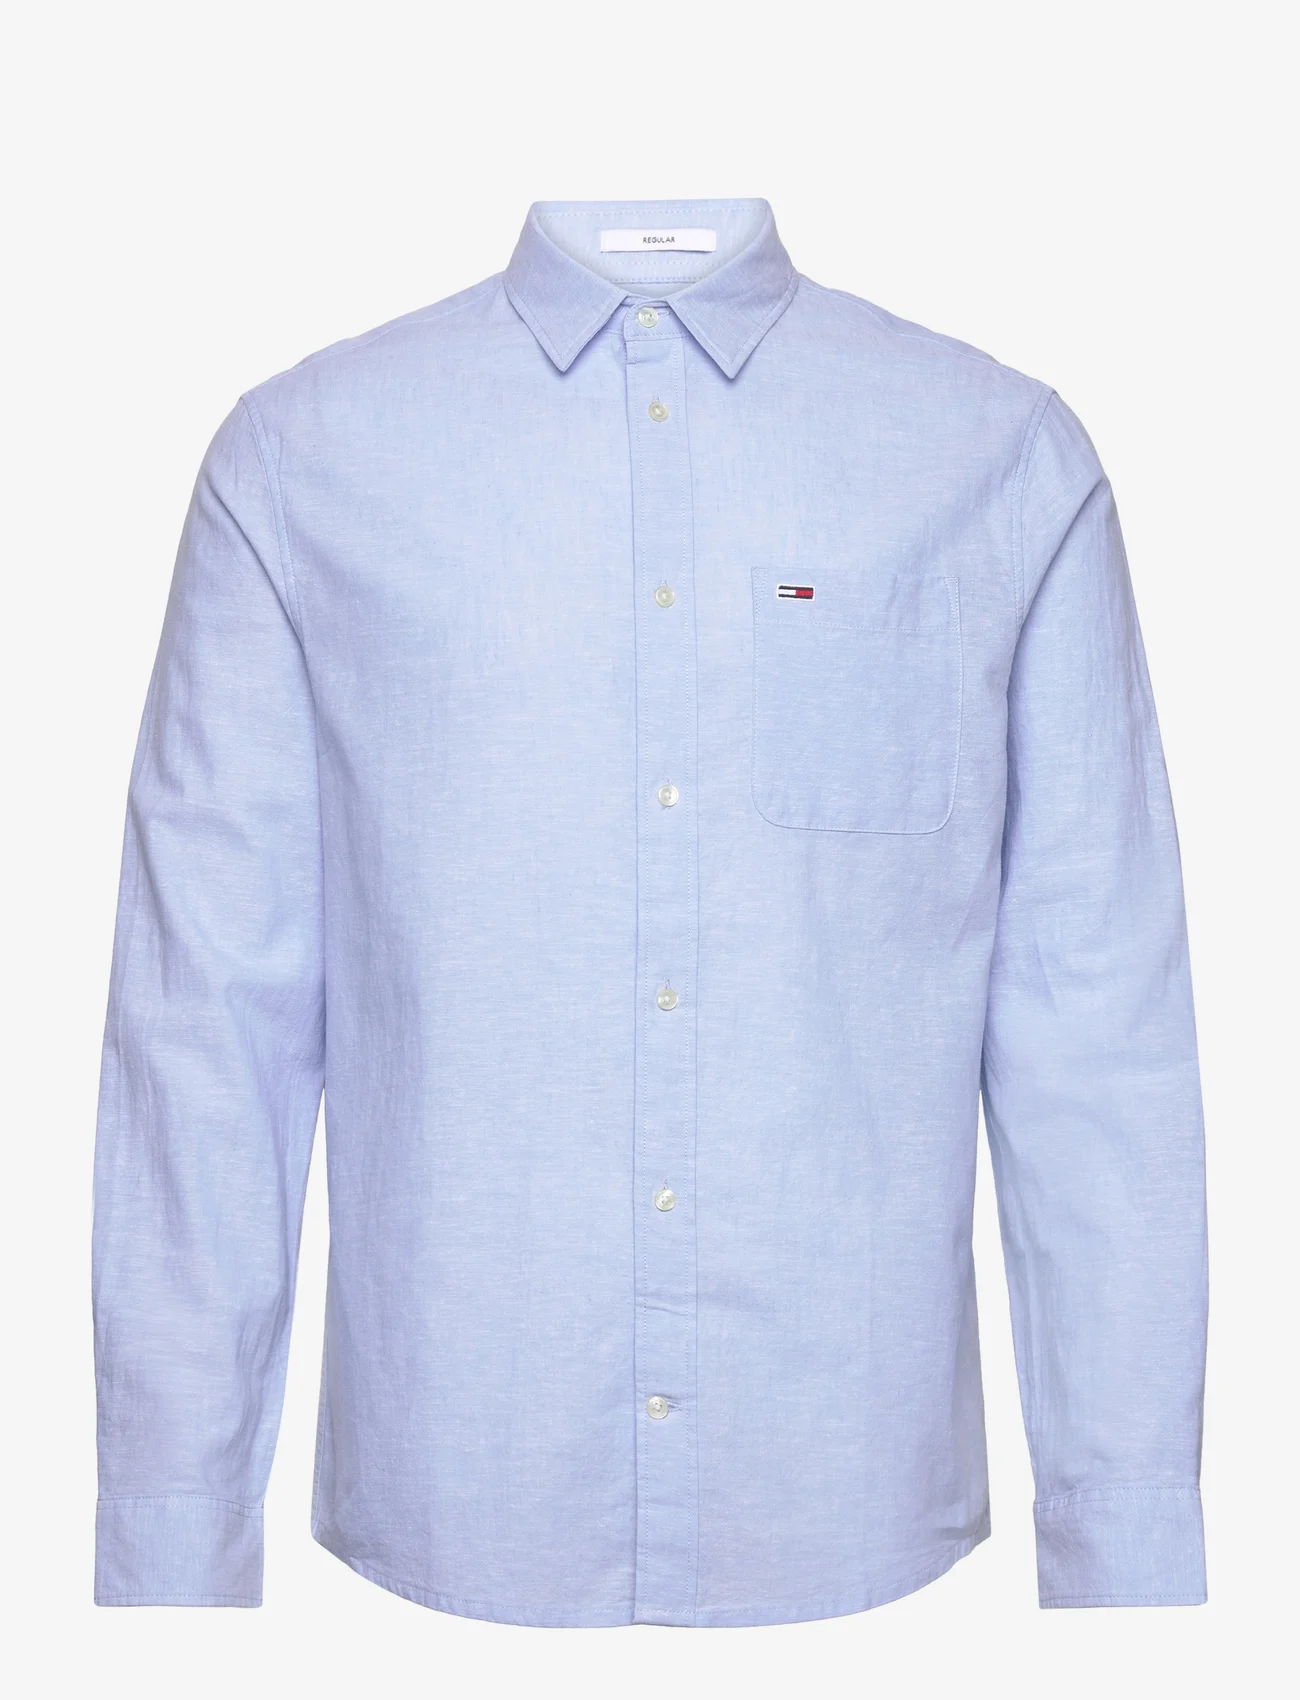 Tommy Jeans - TJM REG LINEN BLEND SHIRT - linen shirts - moderate blue - 0